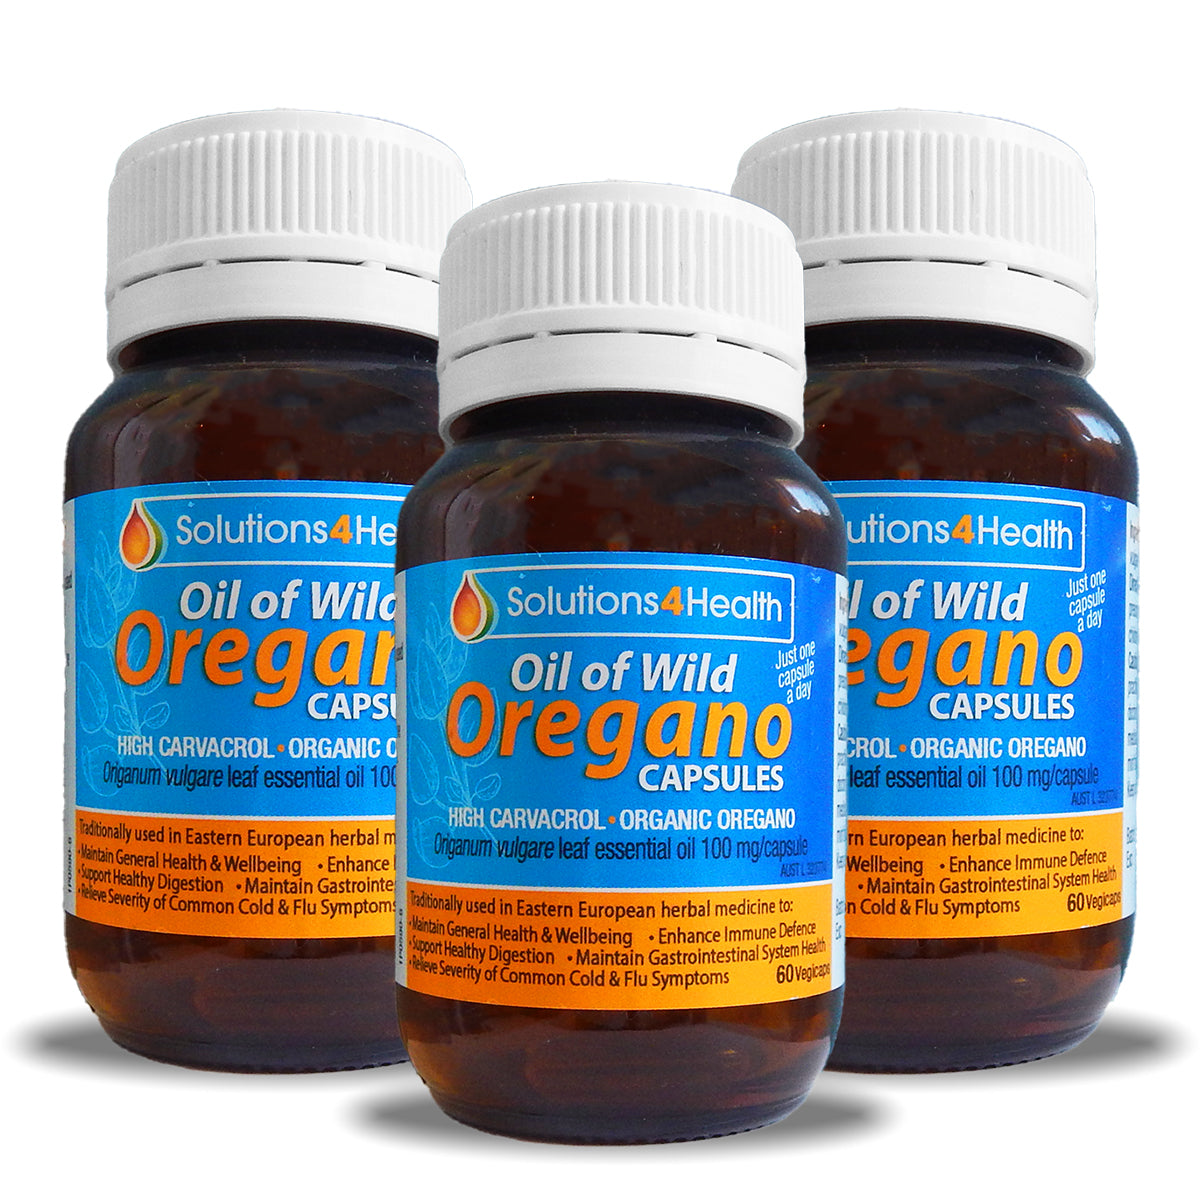 Oil of Wild Oregano 60 Capsule Bottle - 3 Bottle Value Buy